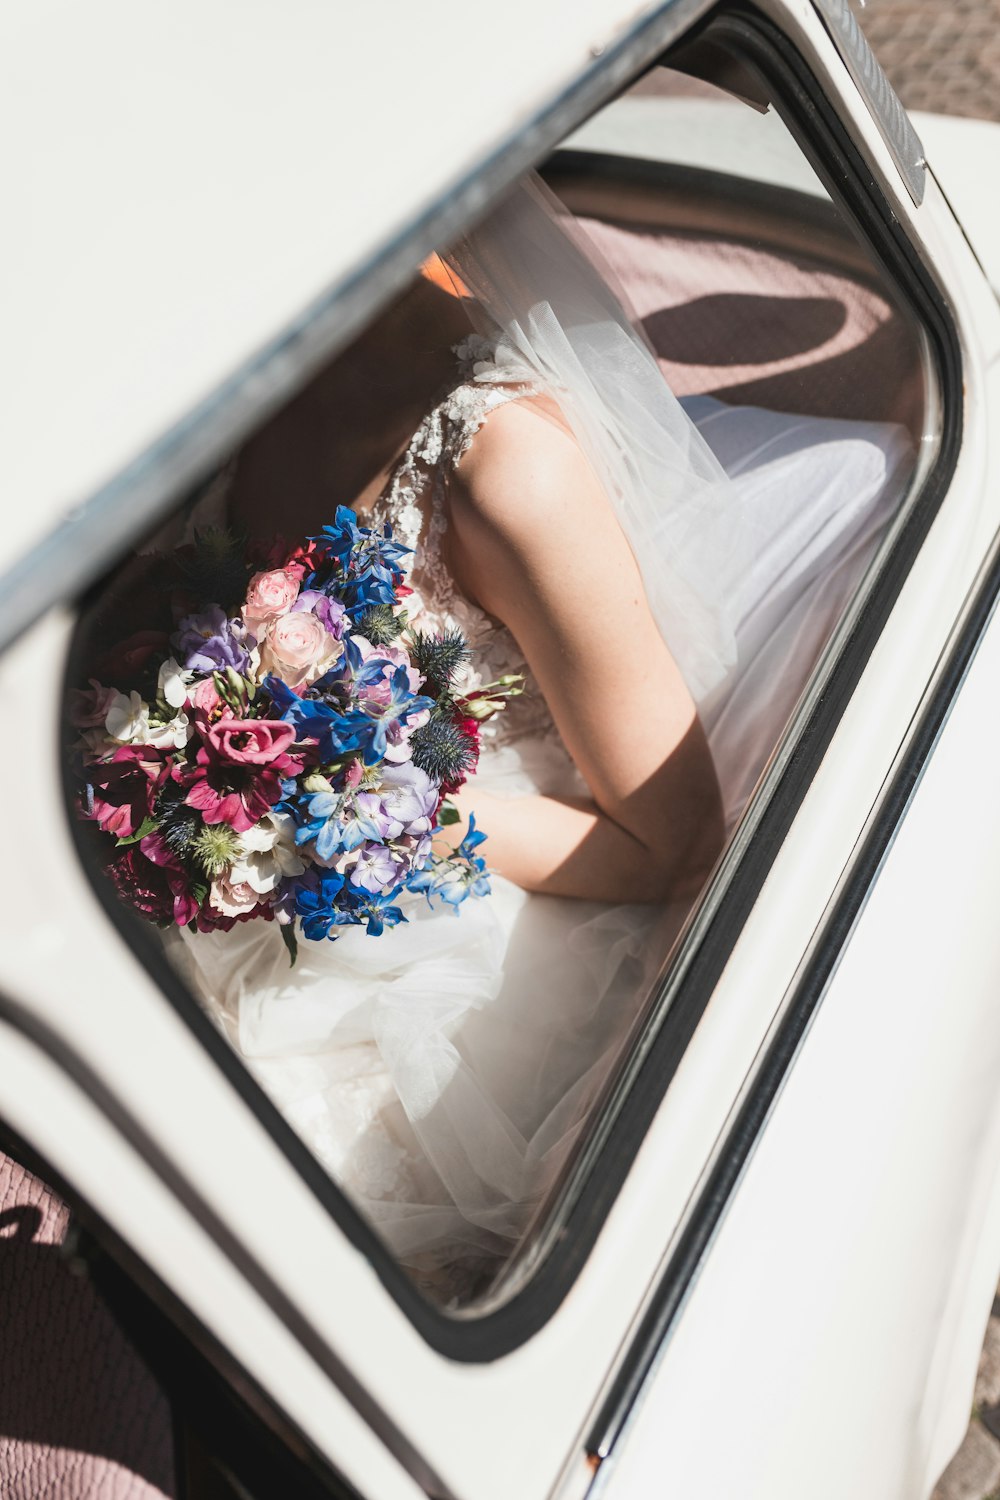 a woman in a wedding dress sitting in a car